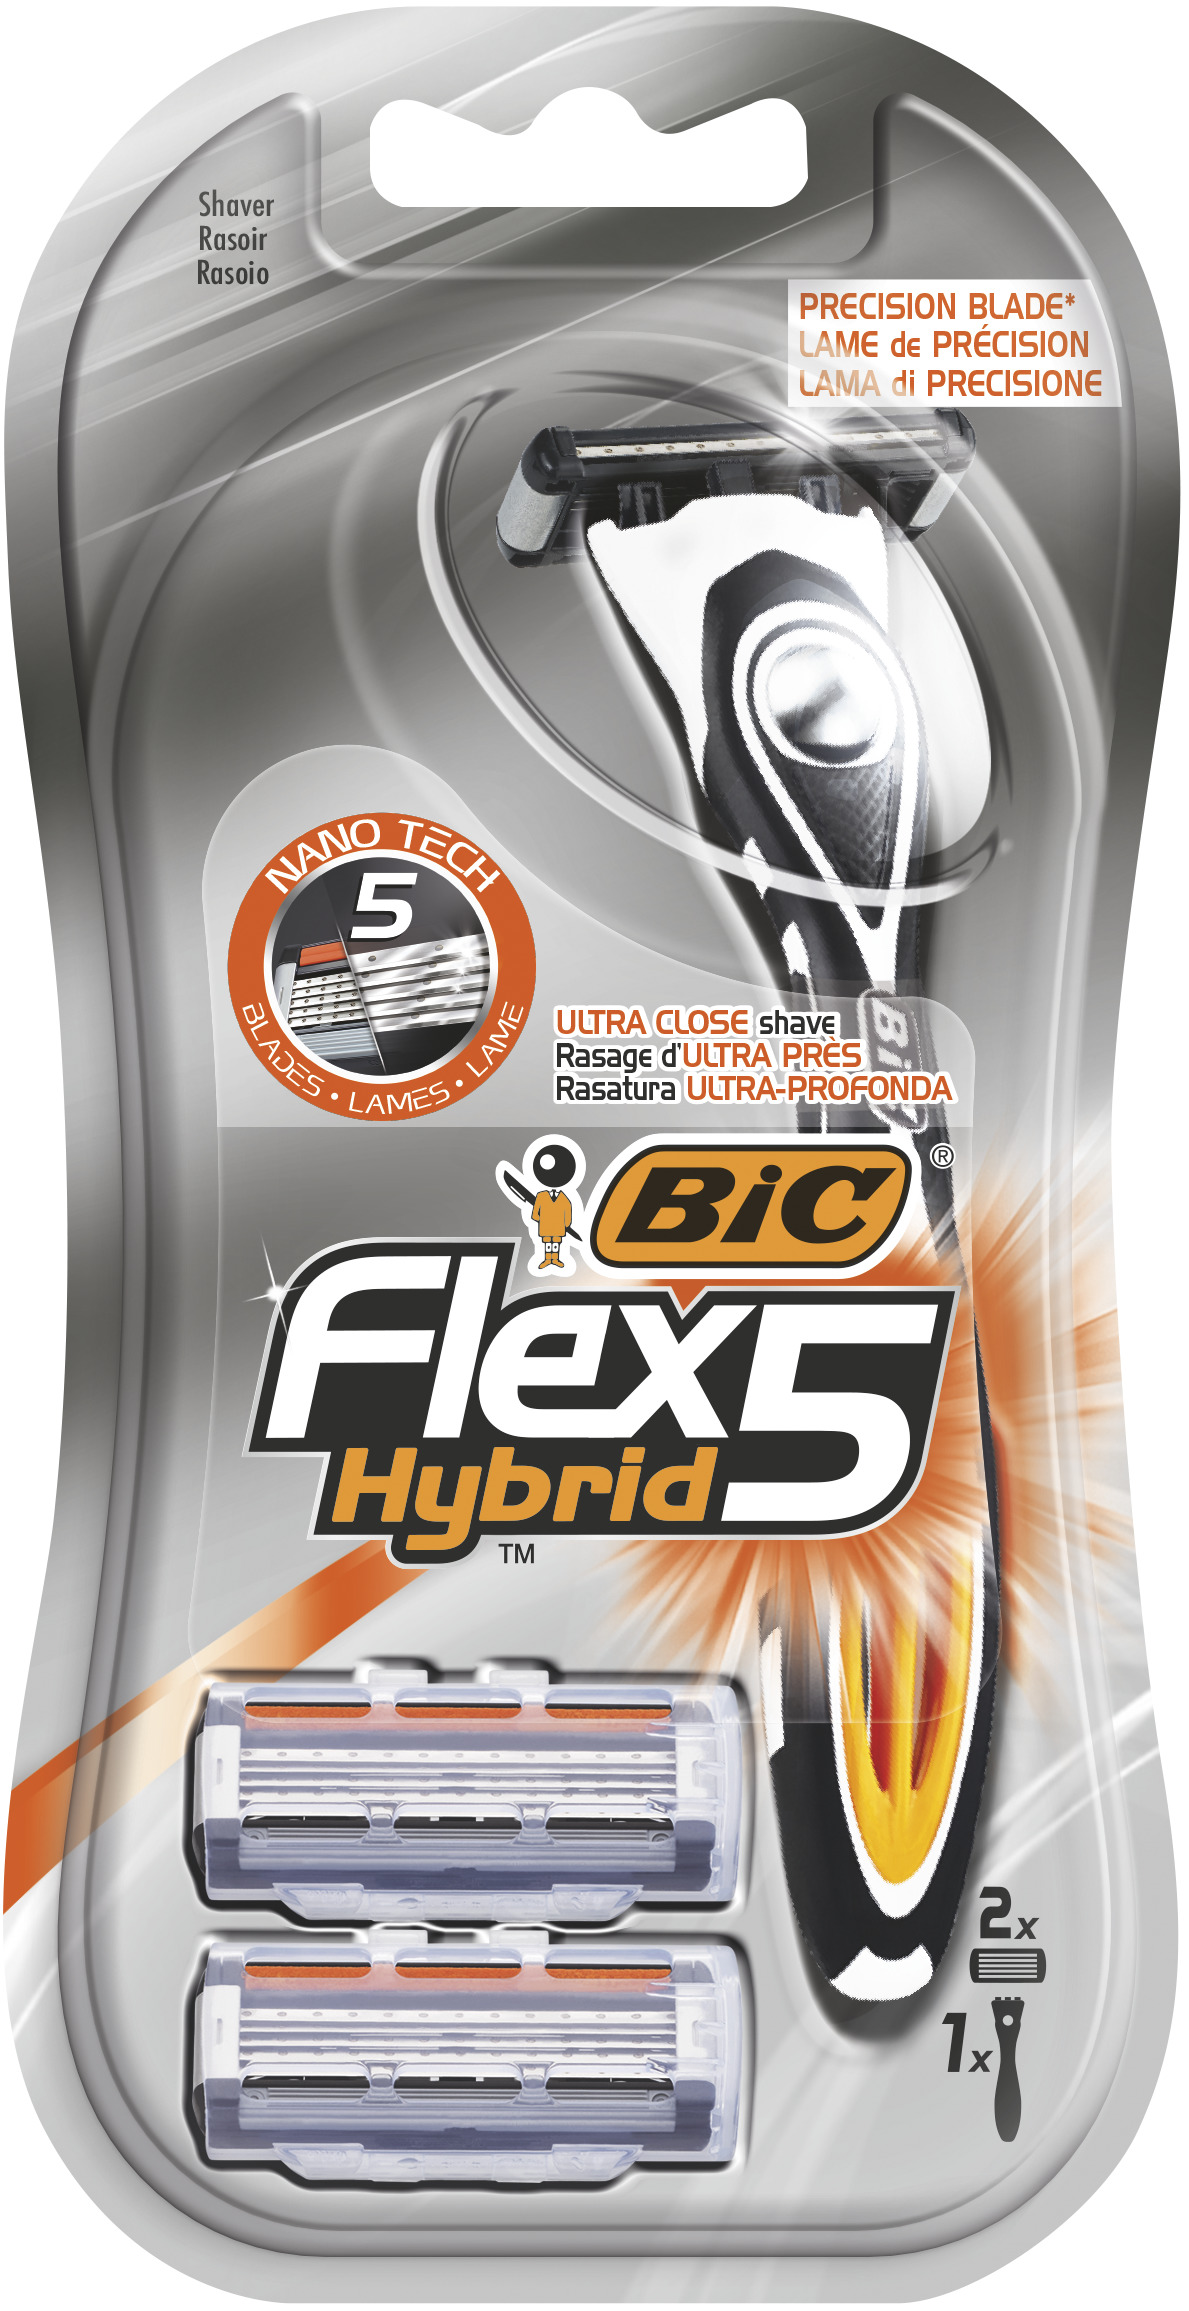 Станок для бритья BIC Flex 5 Hybrid + 2 кассеты сменные кассеты bic flex 5 hybrid 4 шт